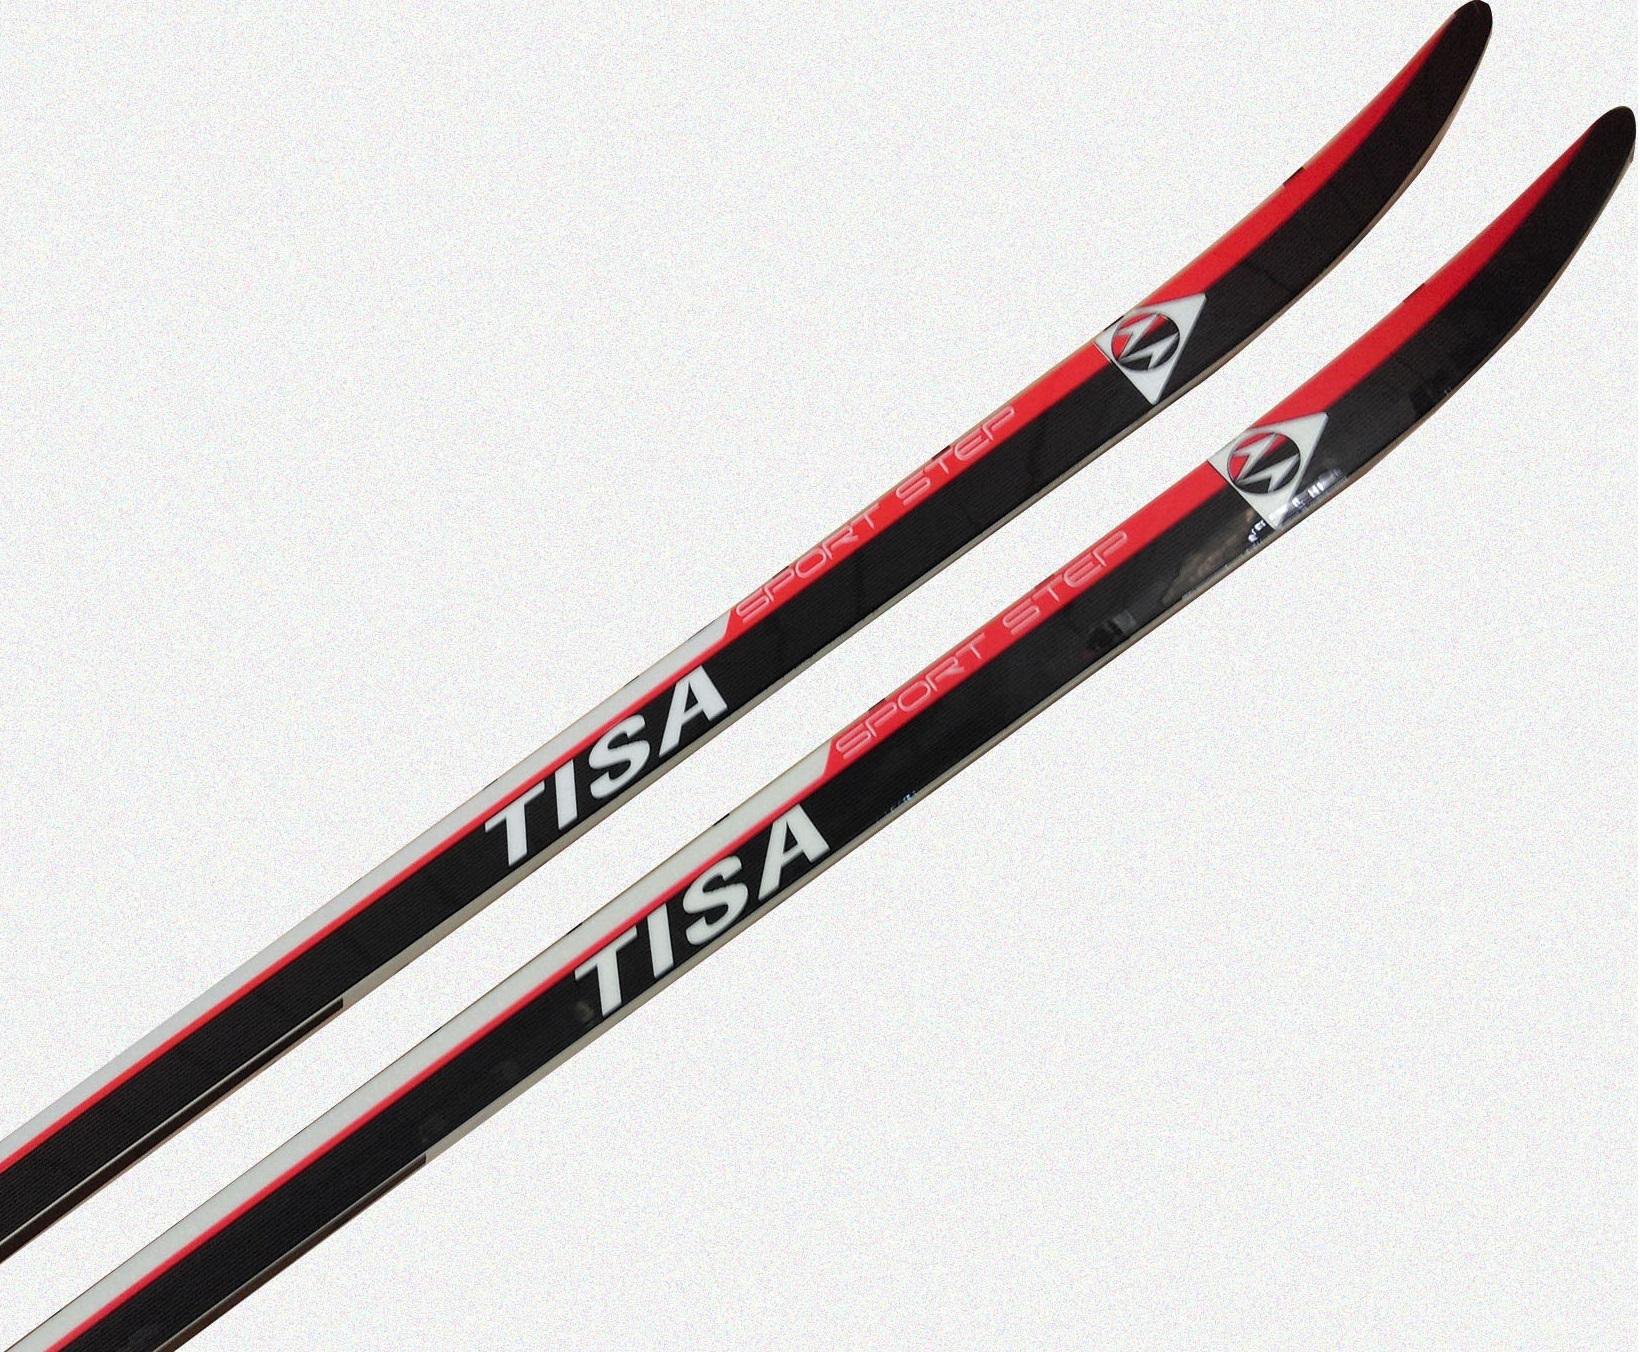 Tisa step. Лыжи Тиса спорт степ. Tisa Sport Step Red. Tisa Fischer лыжи. Tisa Top беговые лыжи 177см.